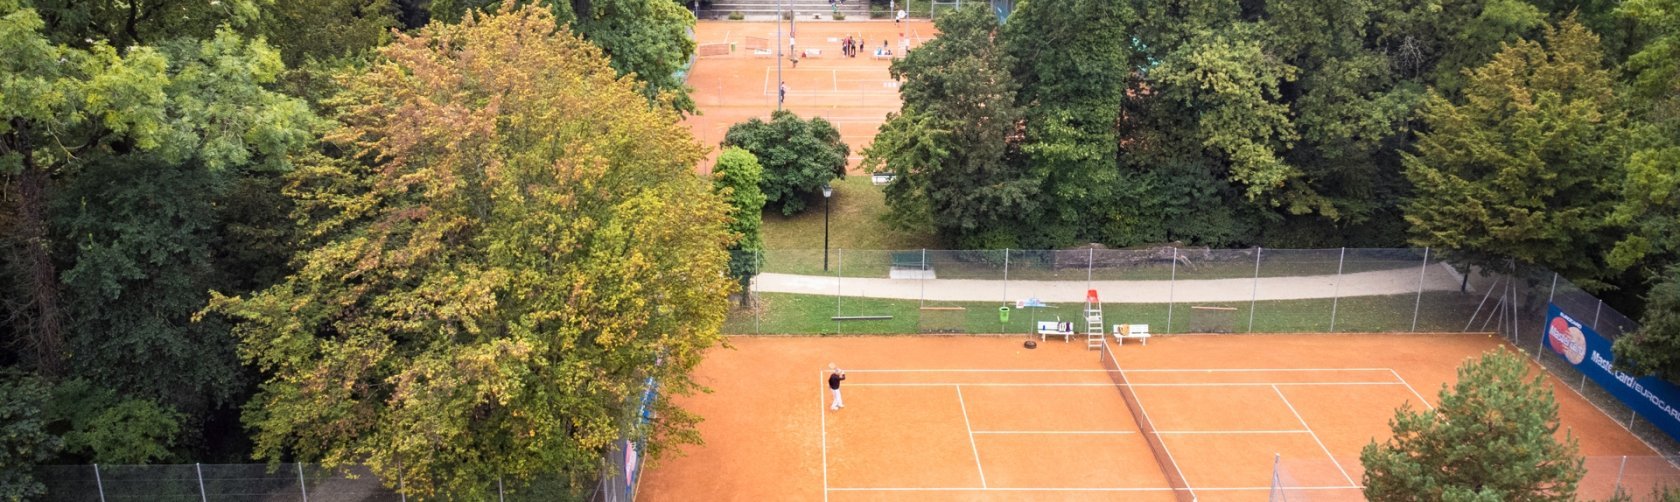 Ville d'Onex - Terrain-tennis